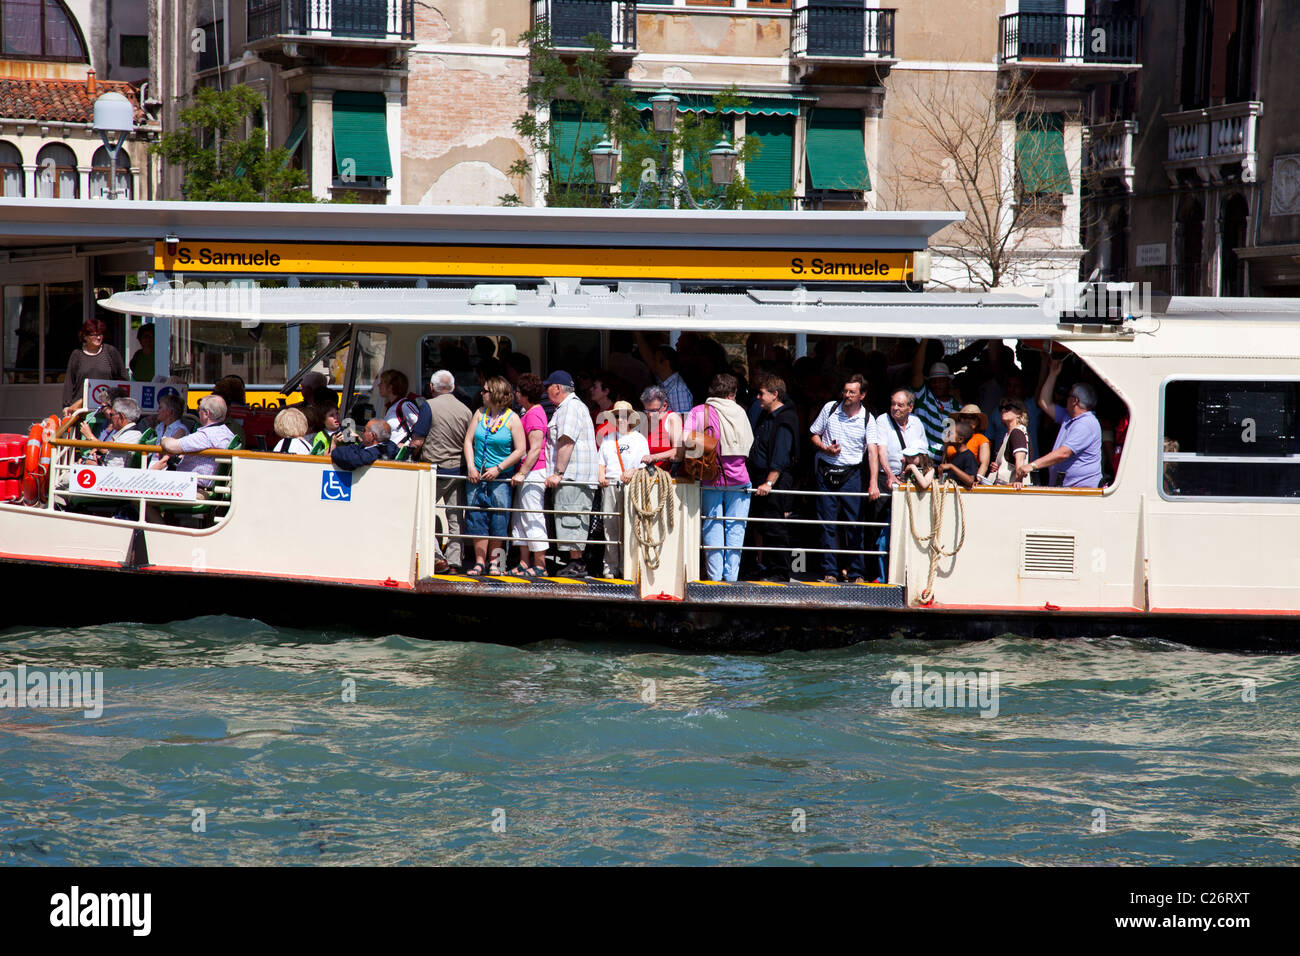 Eine überfüllte Vaporetto Bewegung entlang des Canal Grande in Venedig Italien. Stockfoto